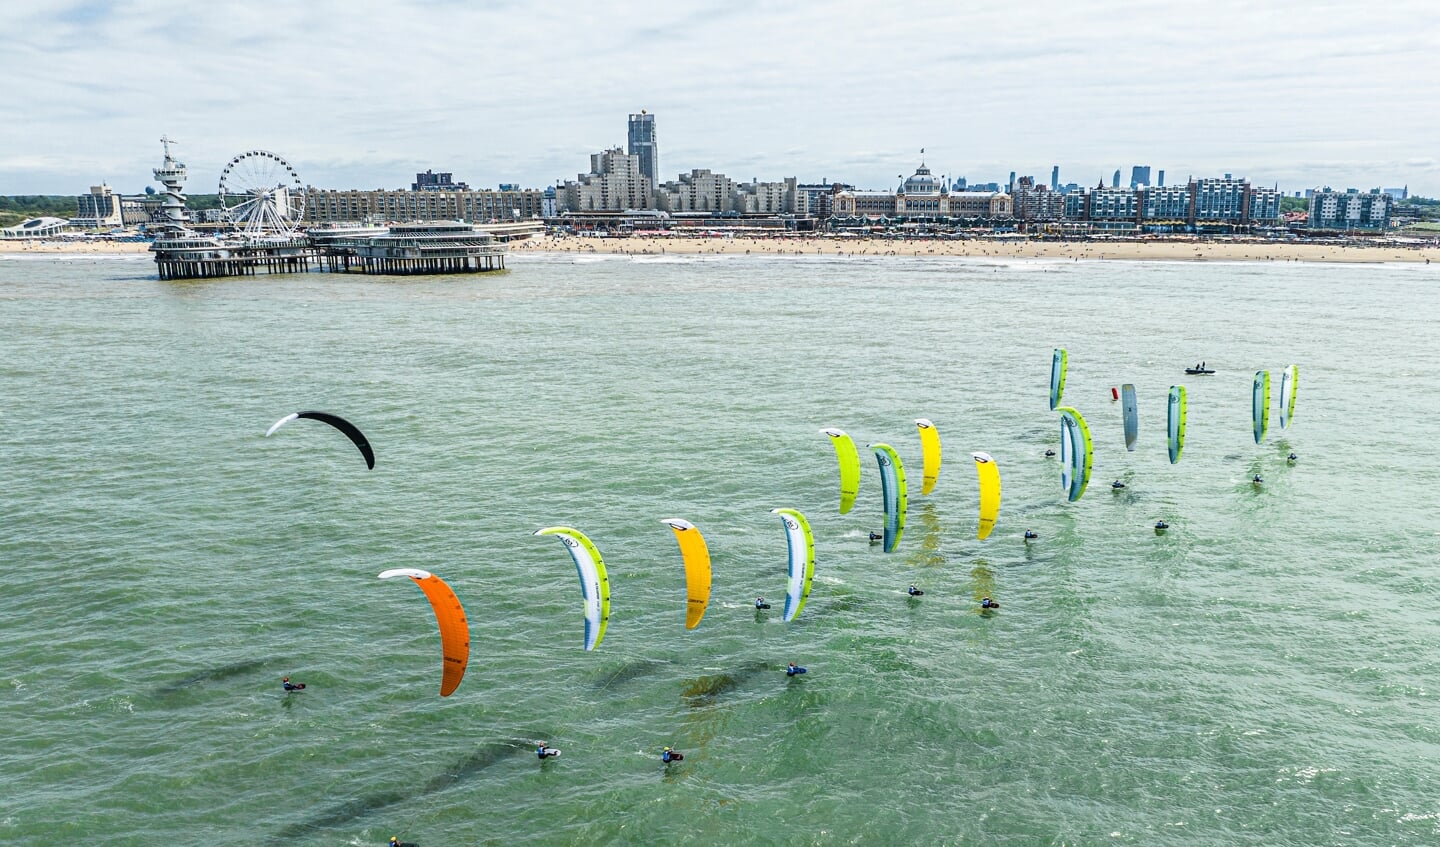 Foiling kites voor de kust van Den Haag.